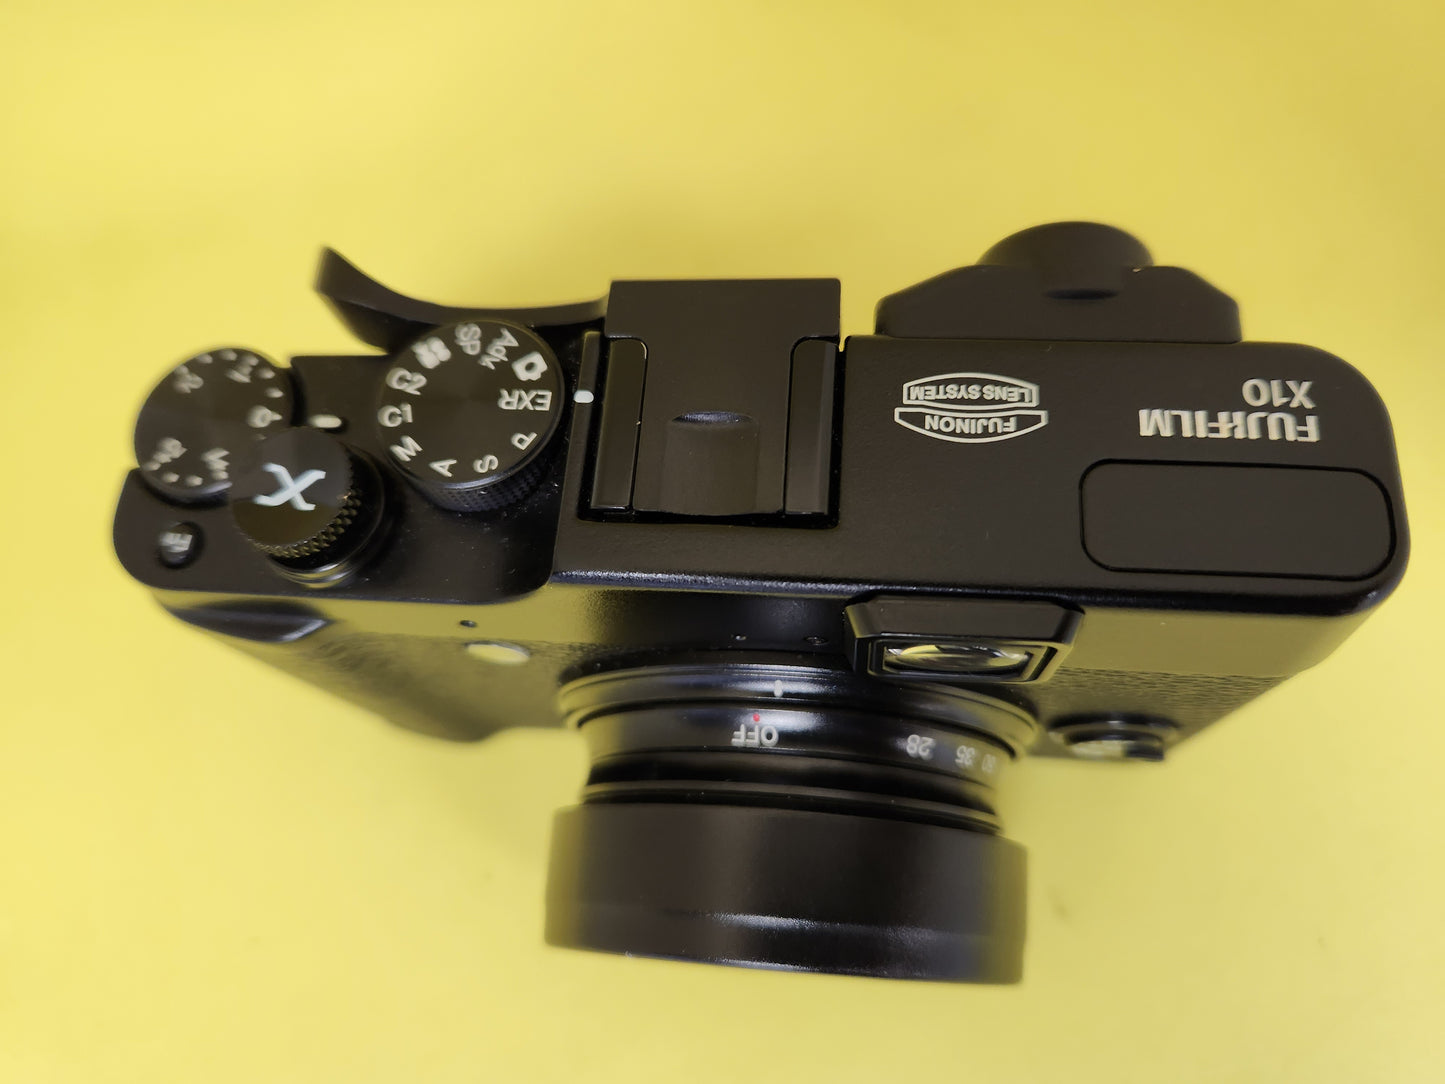 Fujifilm mini professional X10